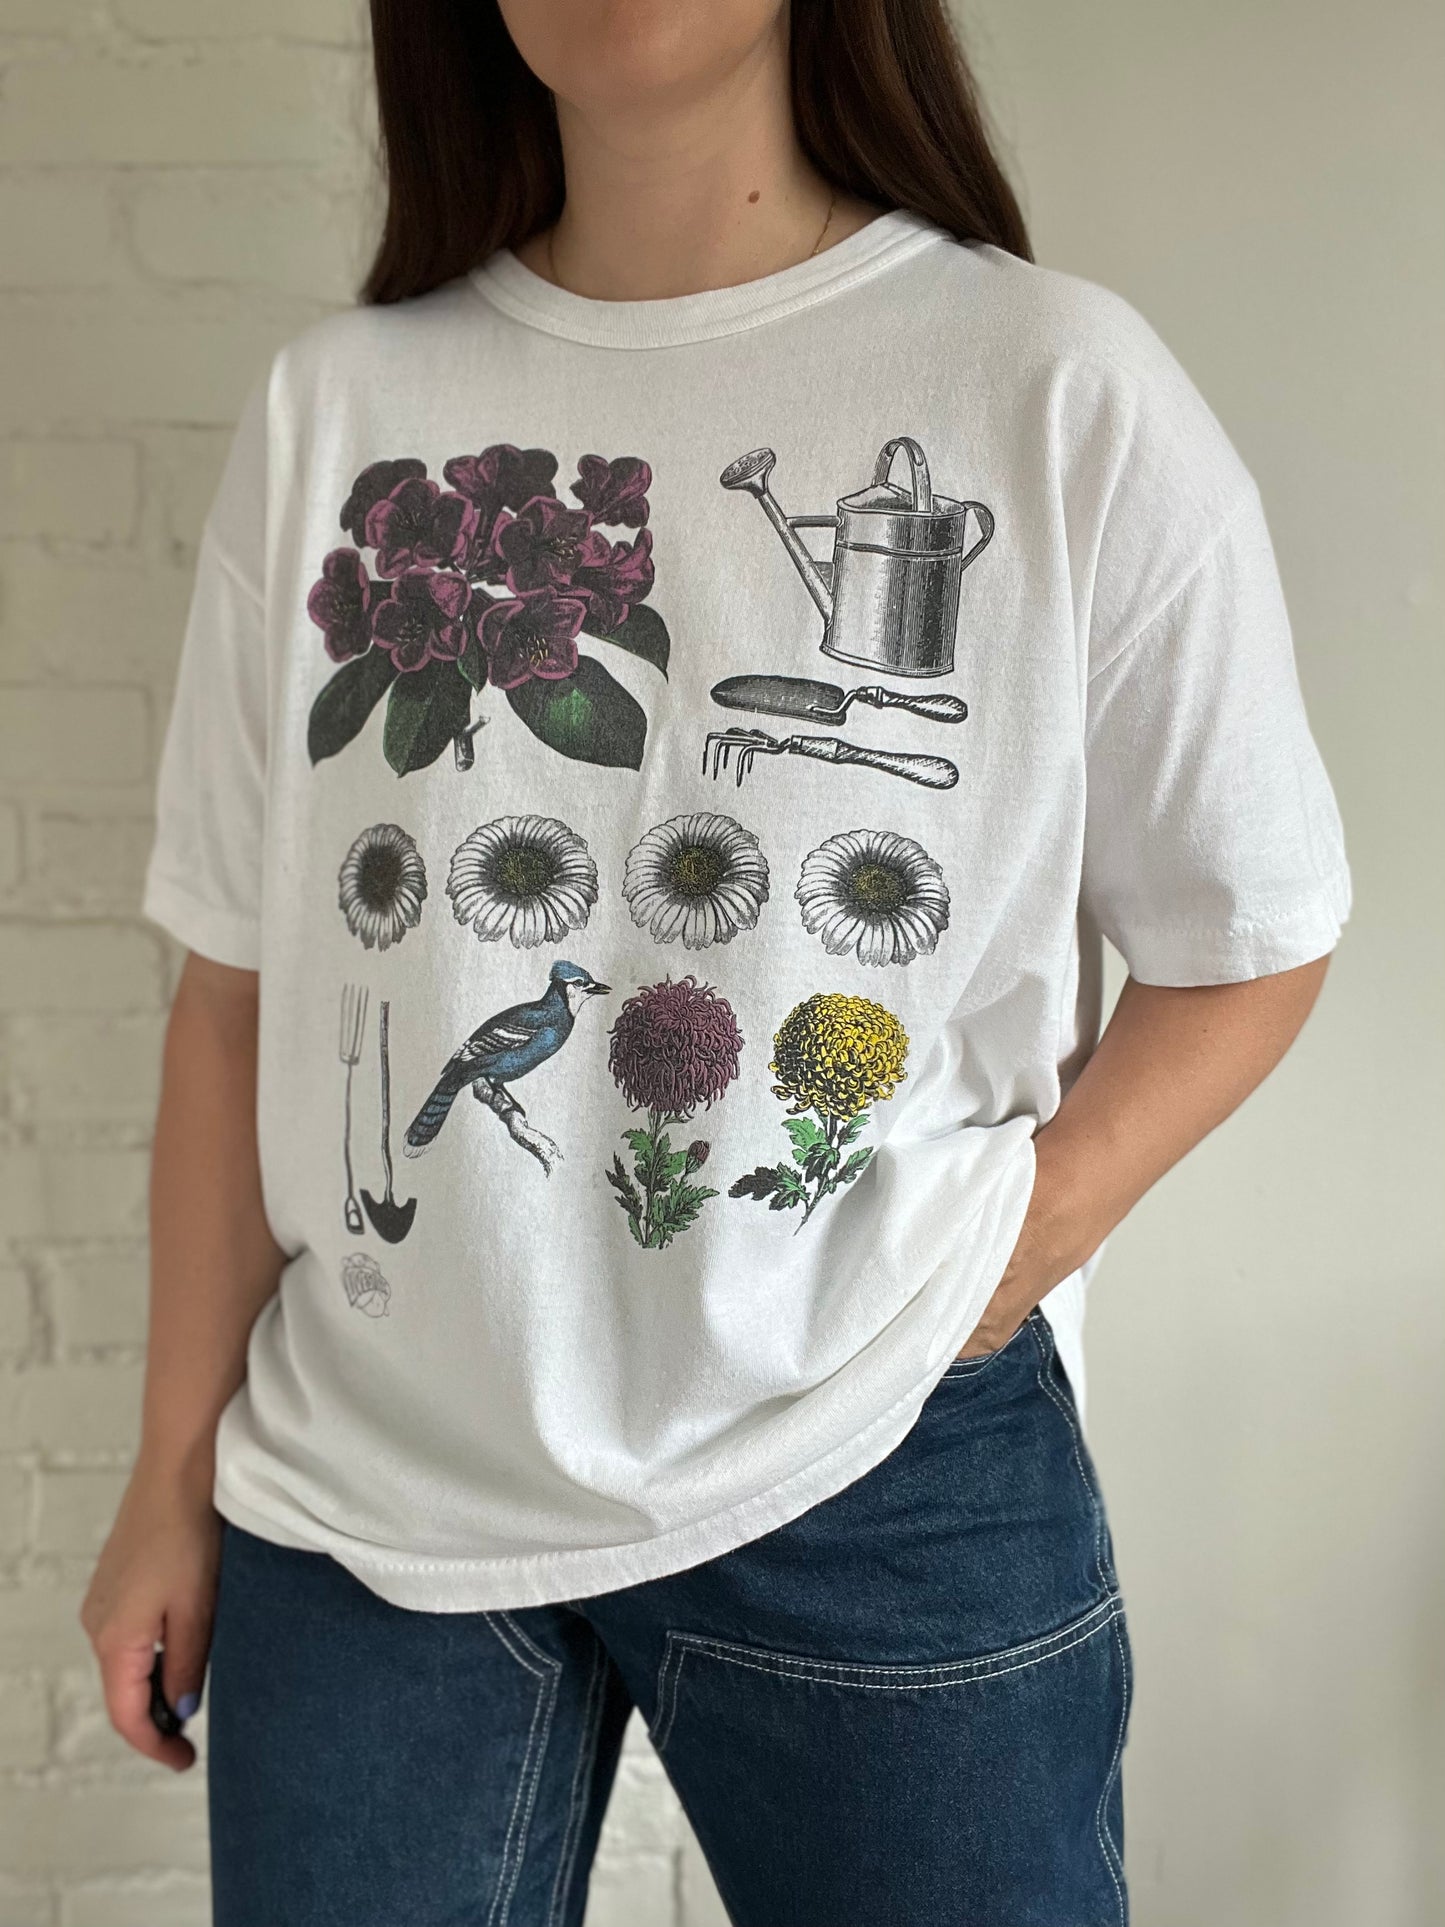 Garden Blue Jay T-Shirt - XL